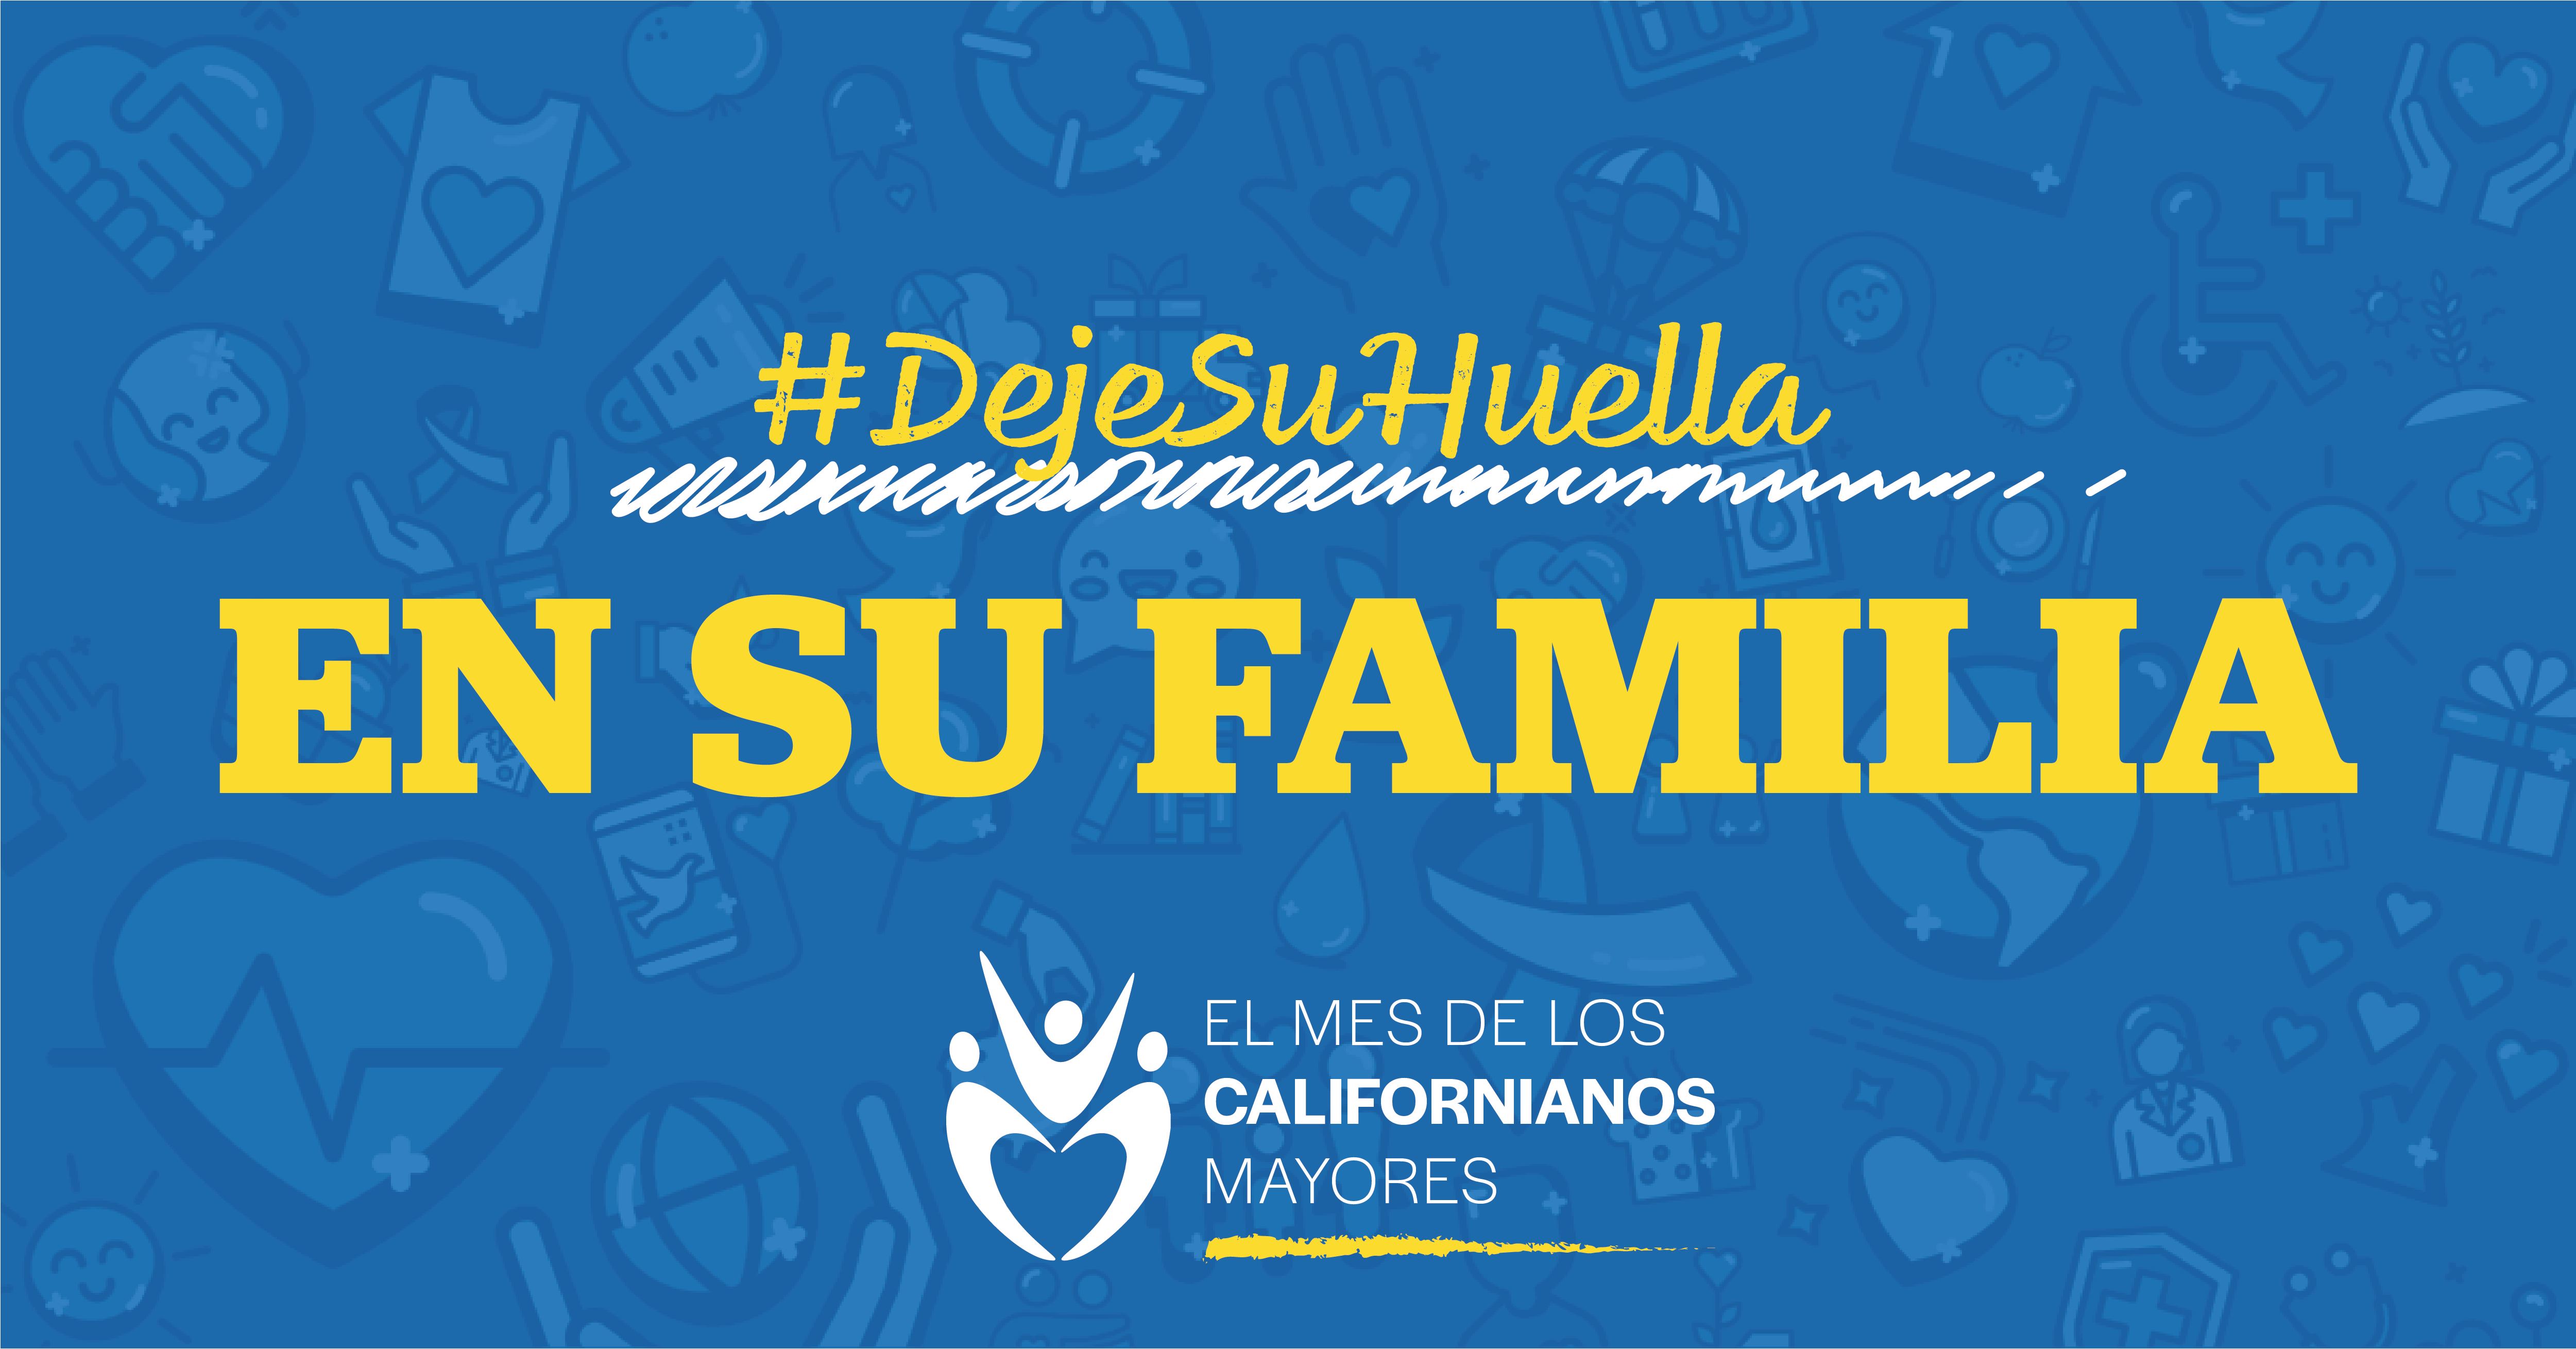 Logotipo del mes de californianos mayores. Texto: #DejeSuHuella En su familia